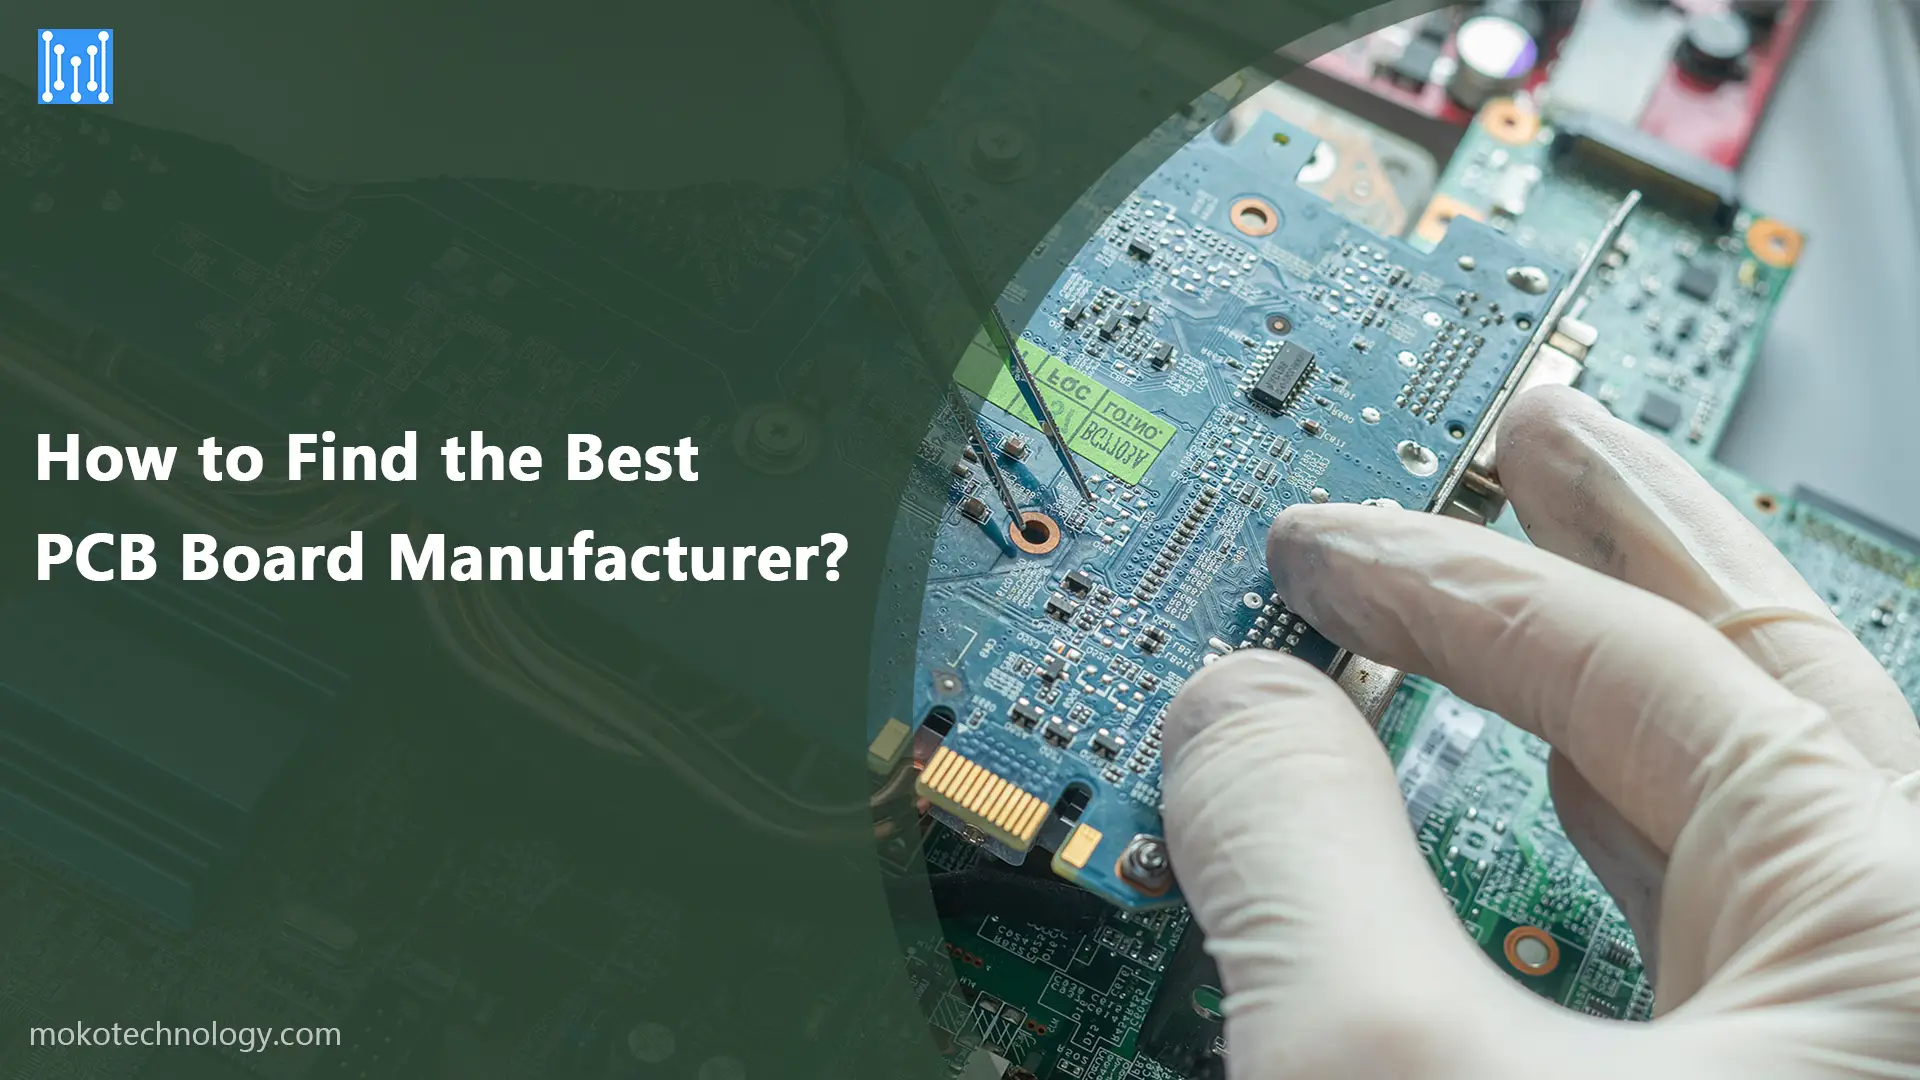 Kako najti najboljšega proizvajalca PCB plošč